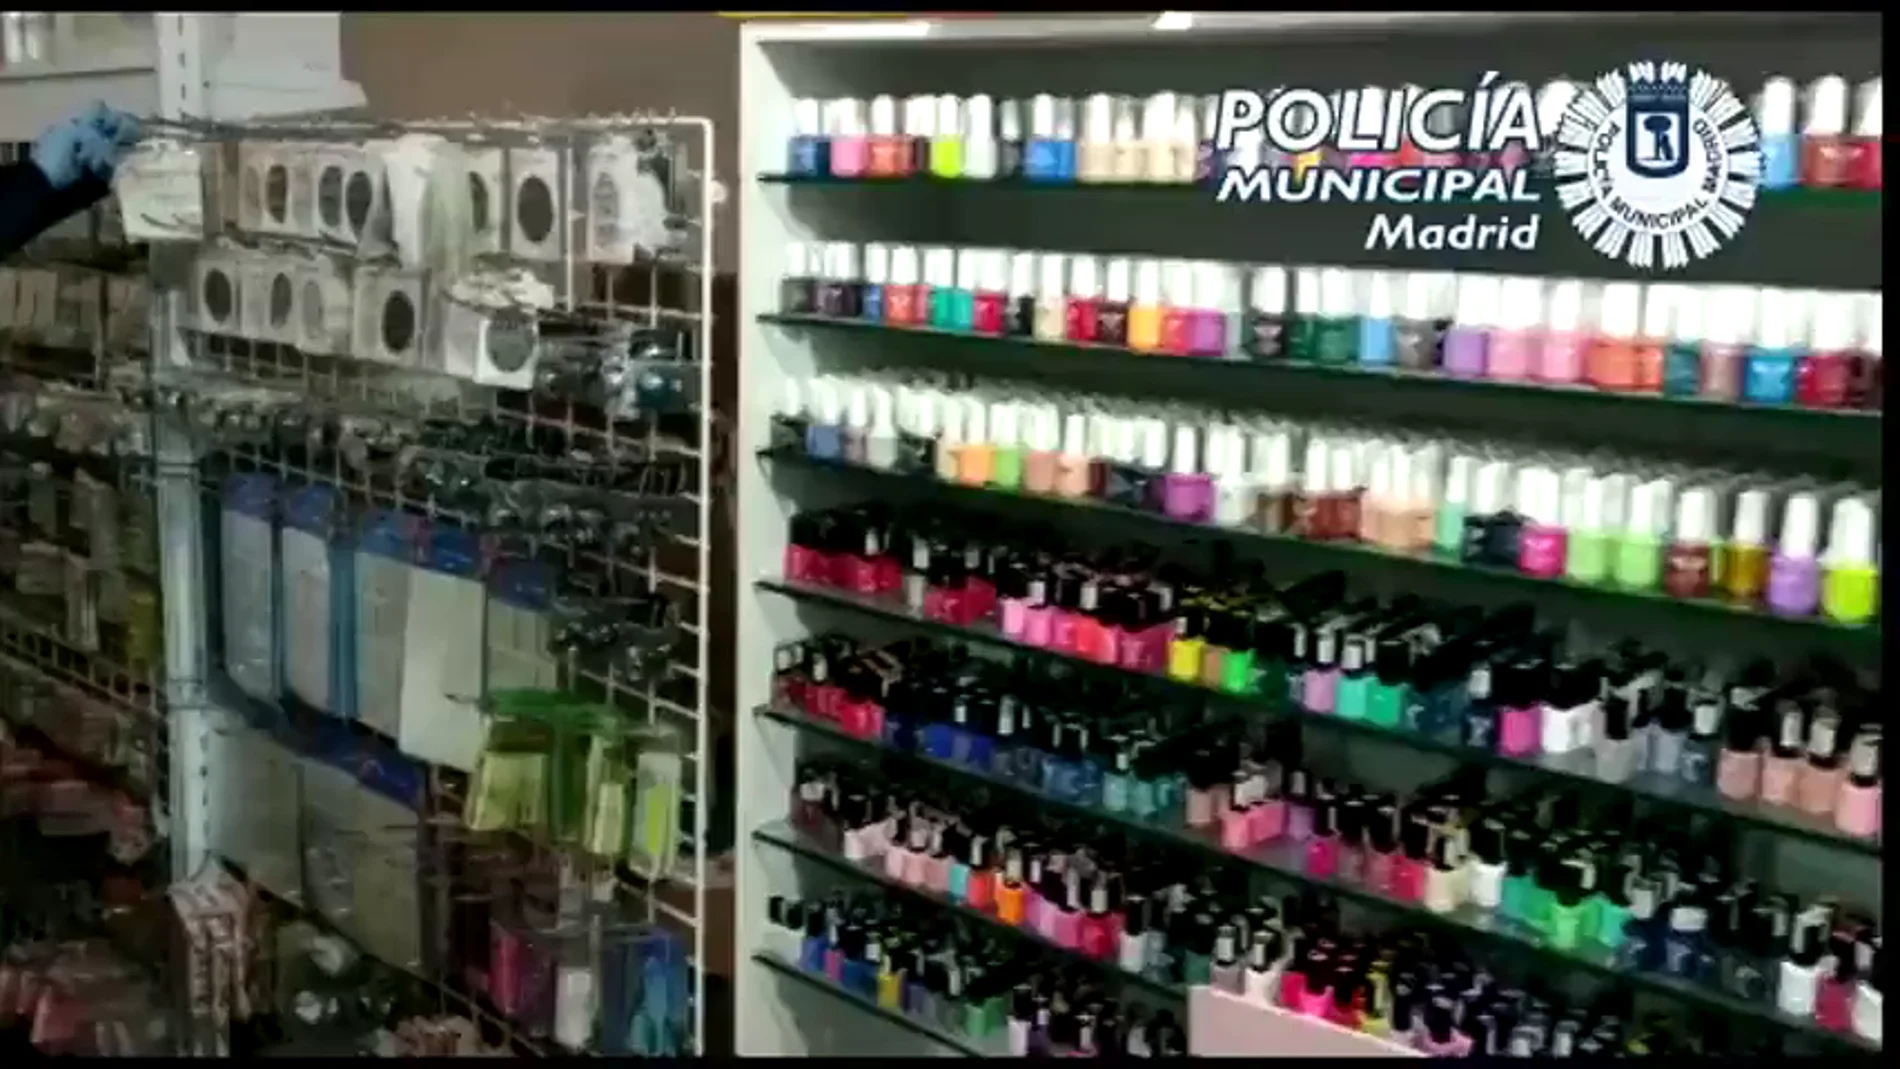 La Policía localiza en Madrid un local que distribuía productos de manicura "explosivos" y "cancerígenos" sin licencia